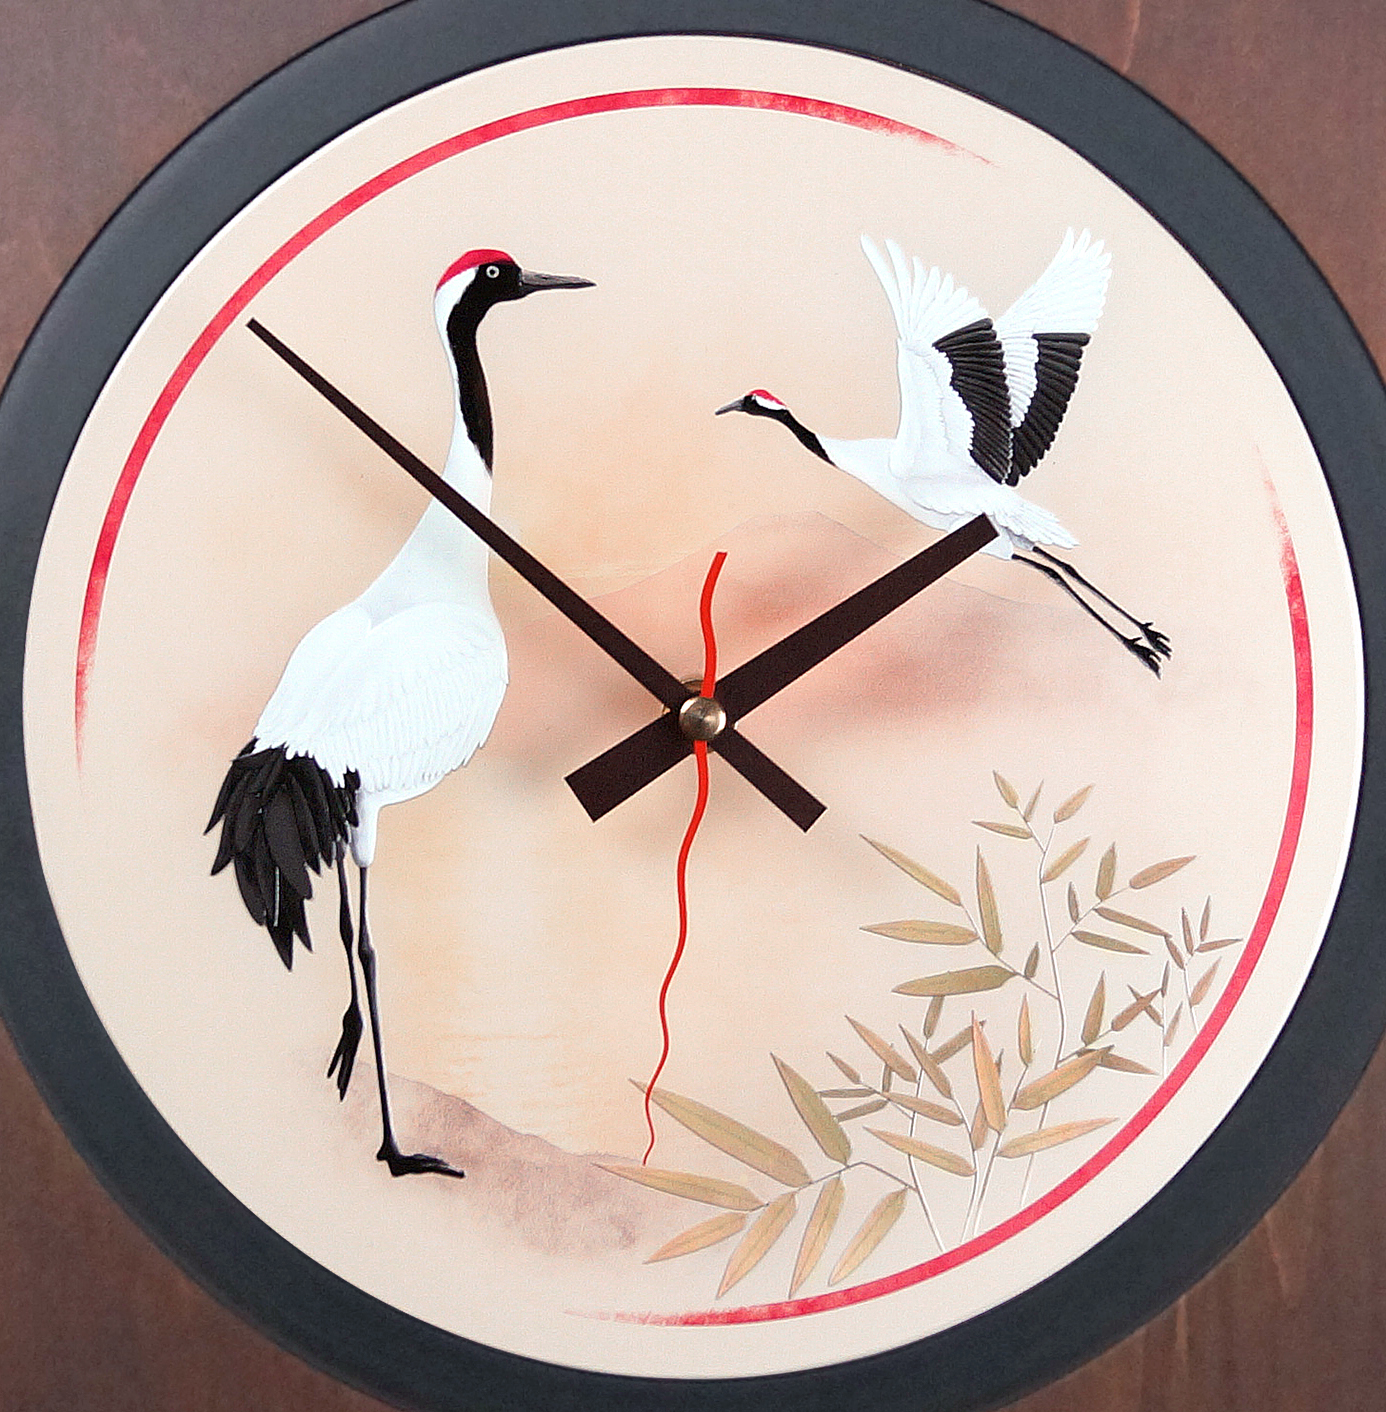 Фото часов Настенные часы Mado «Одору цурю» (Танцующий журавль) -MD-608